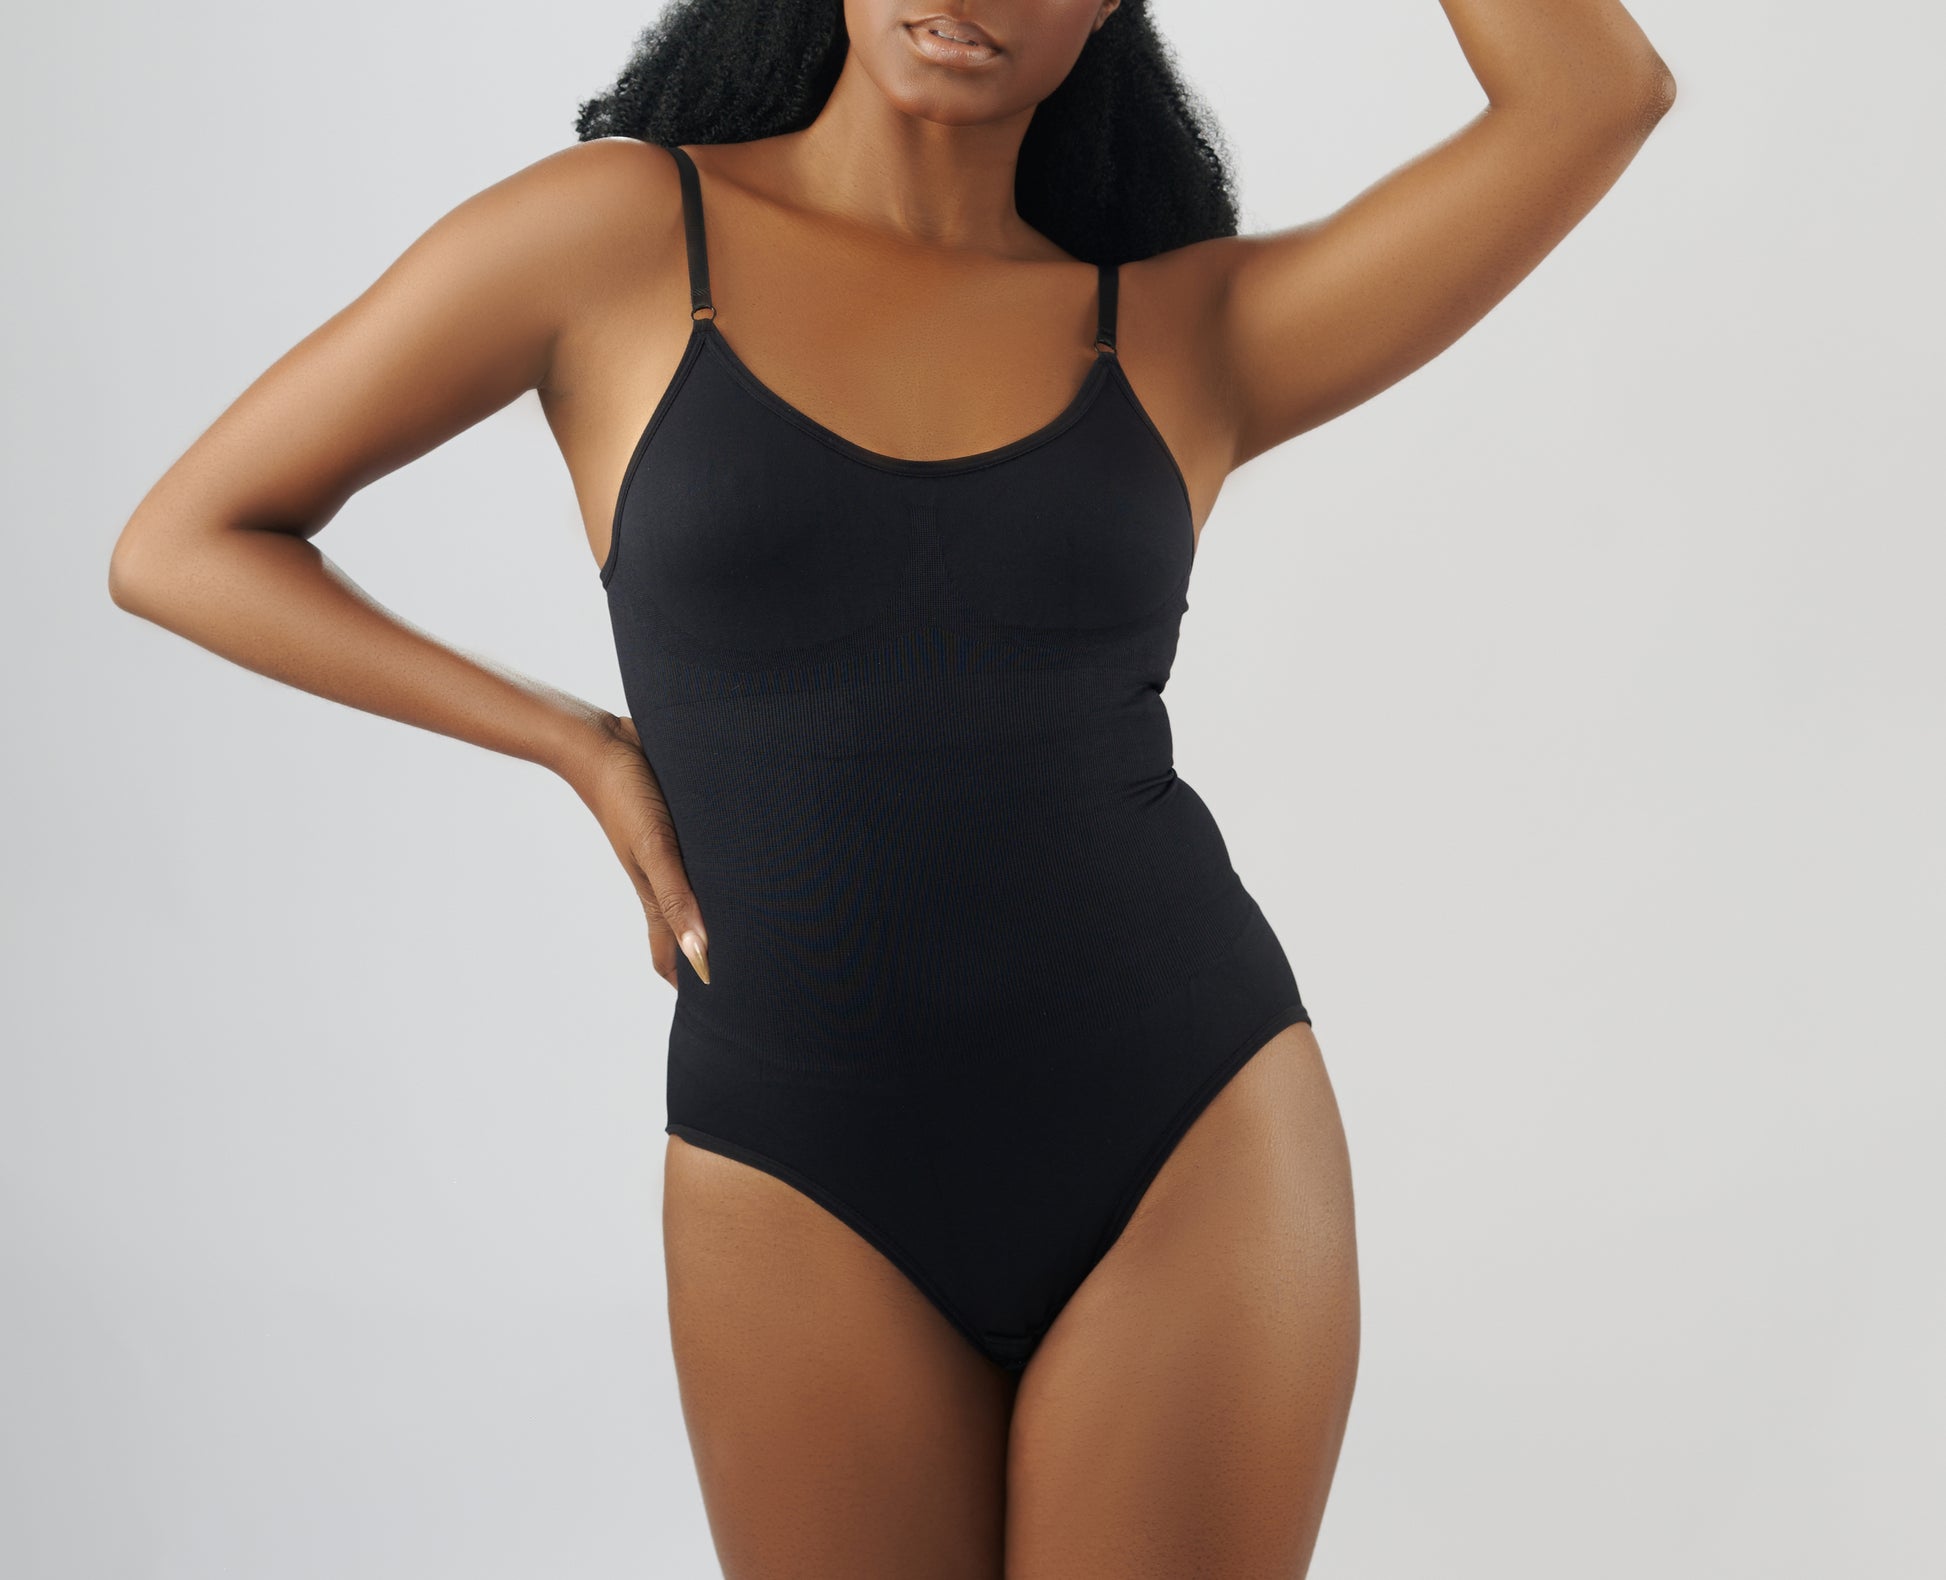 BGFIIPAJG shaping bodysuit for women black underwear women Pull On 100%  cotton underwear ladies ploppydolly bodysuit shapewear ribbed bodysuit for  women bodysuit for women women's lingerie tape : : Fashion